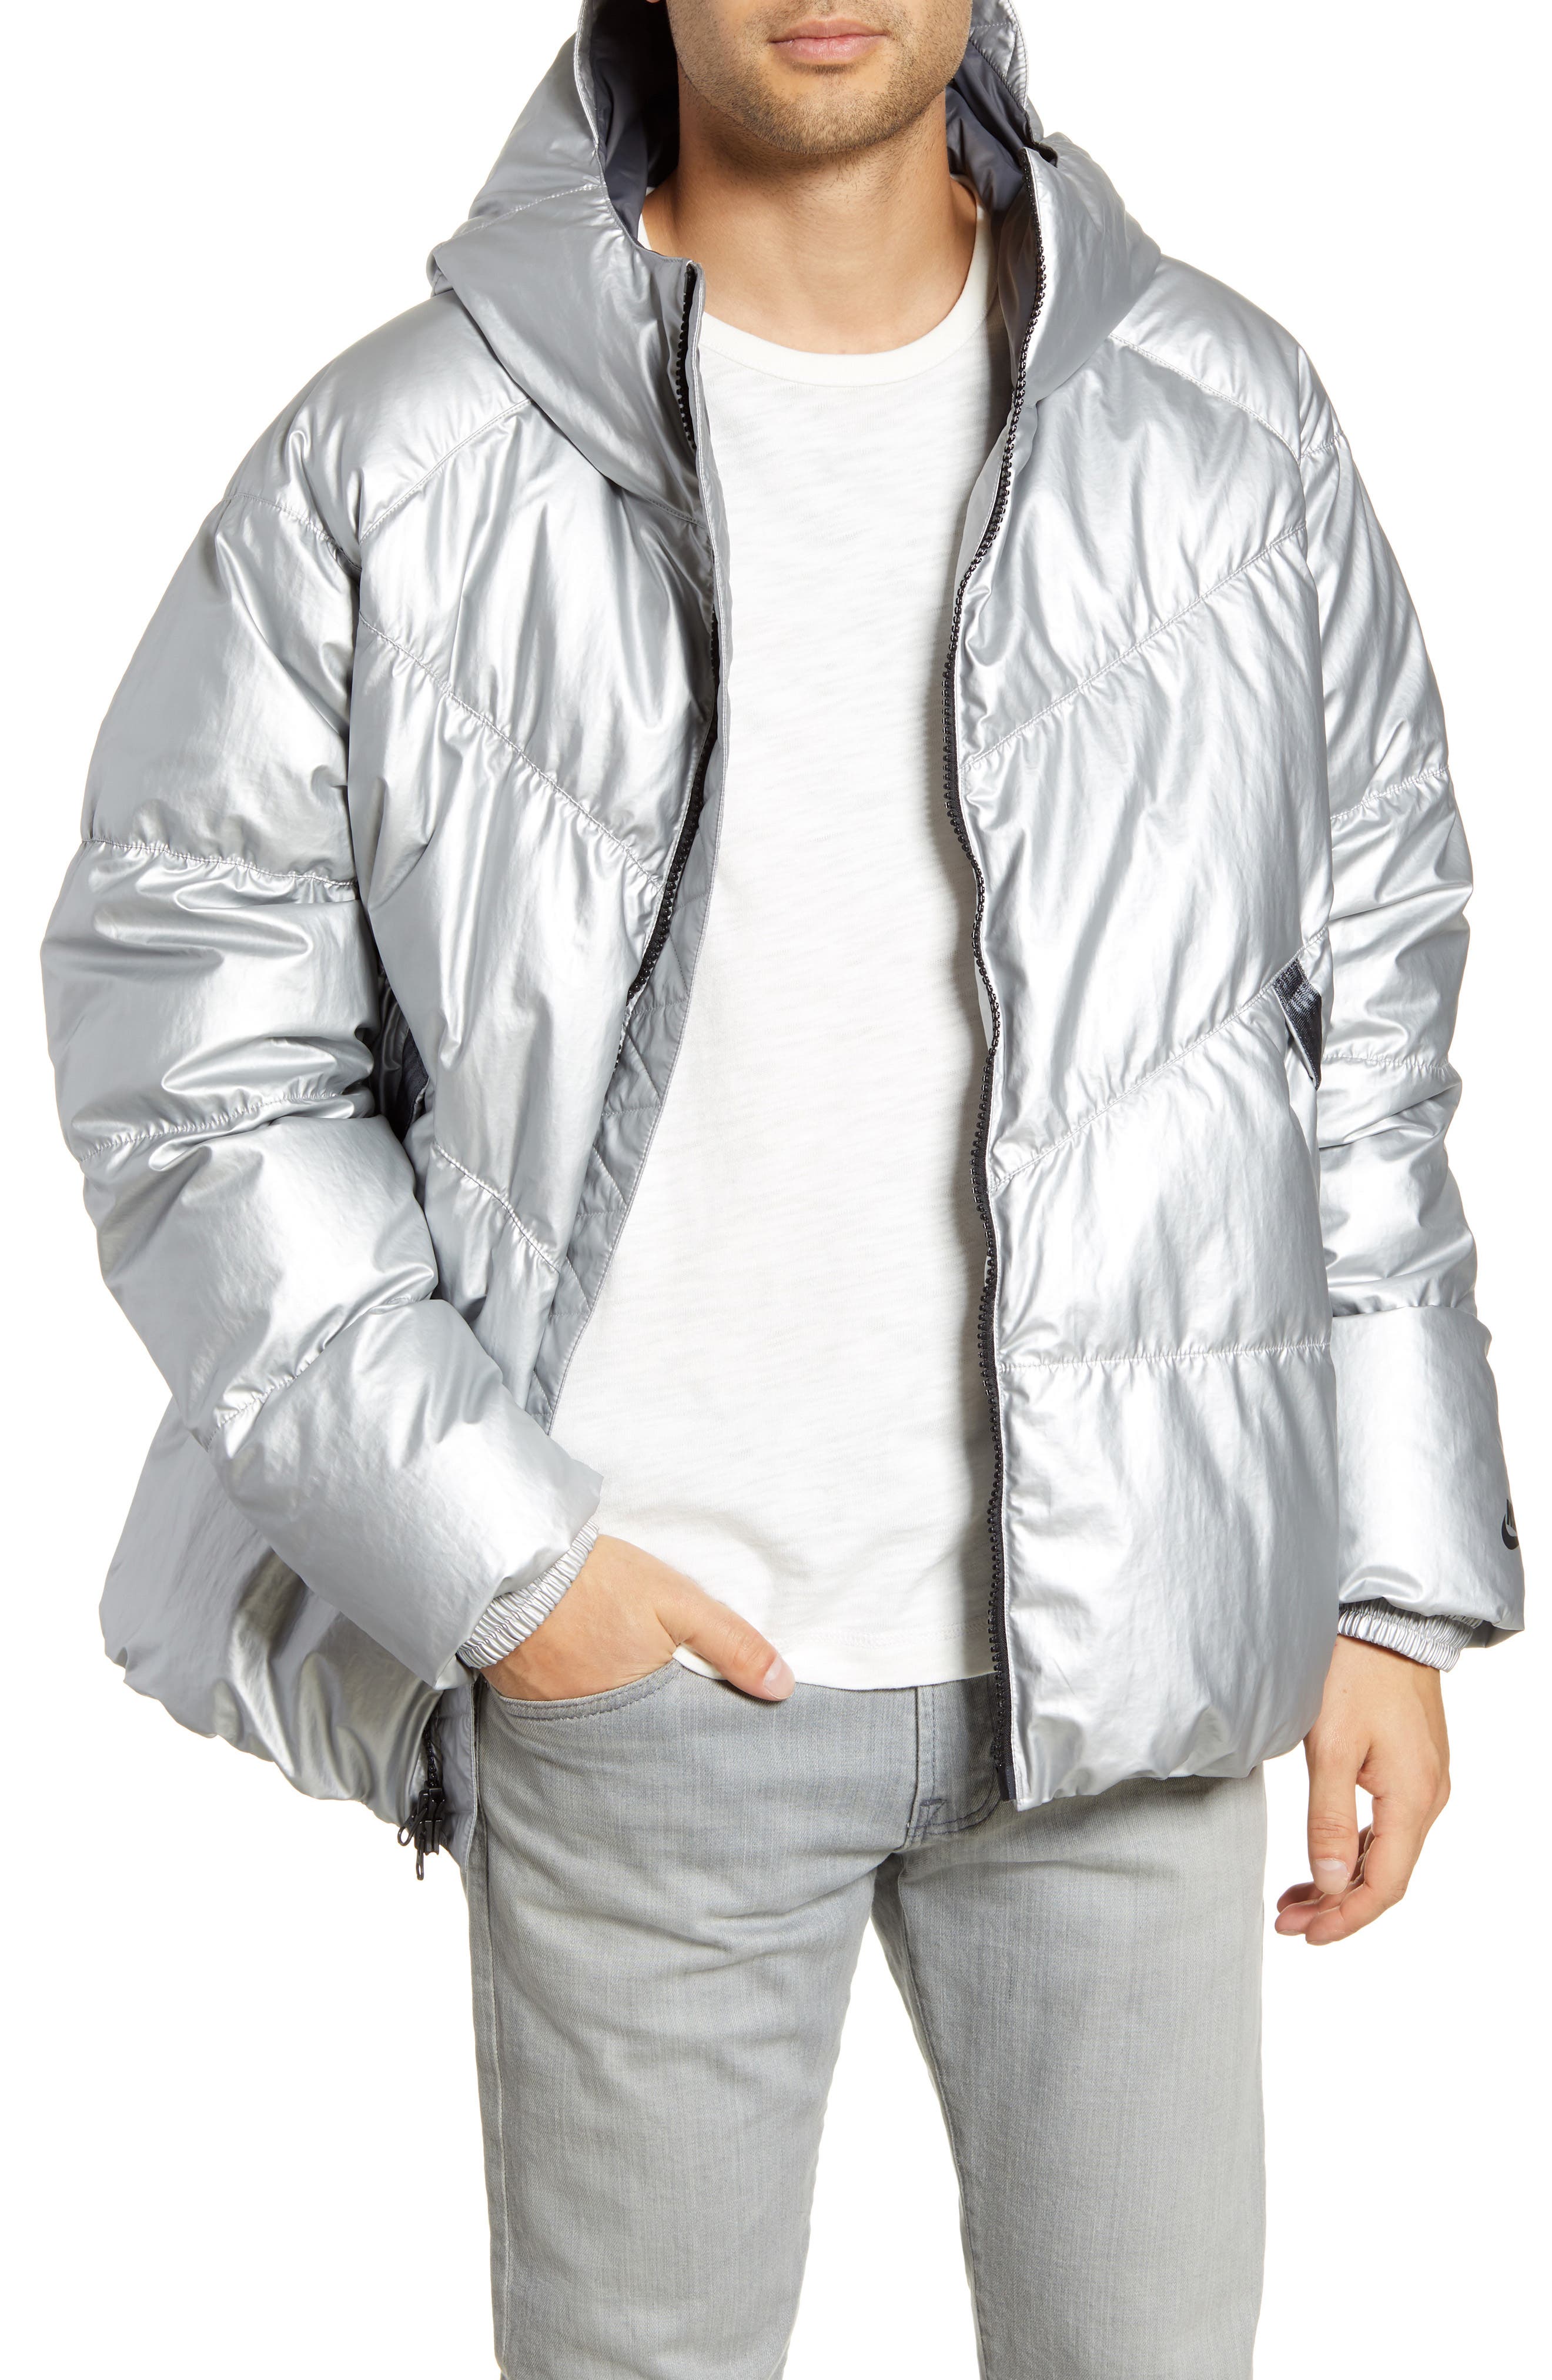 metallic silver nike jacket